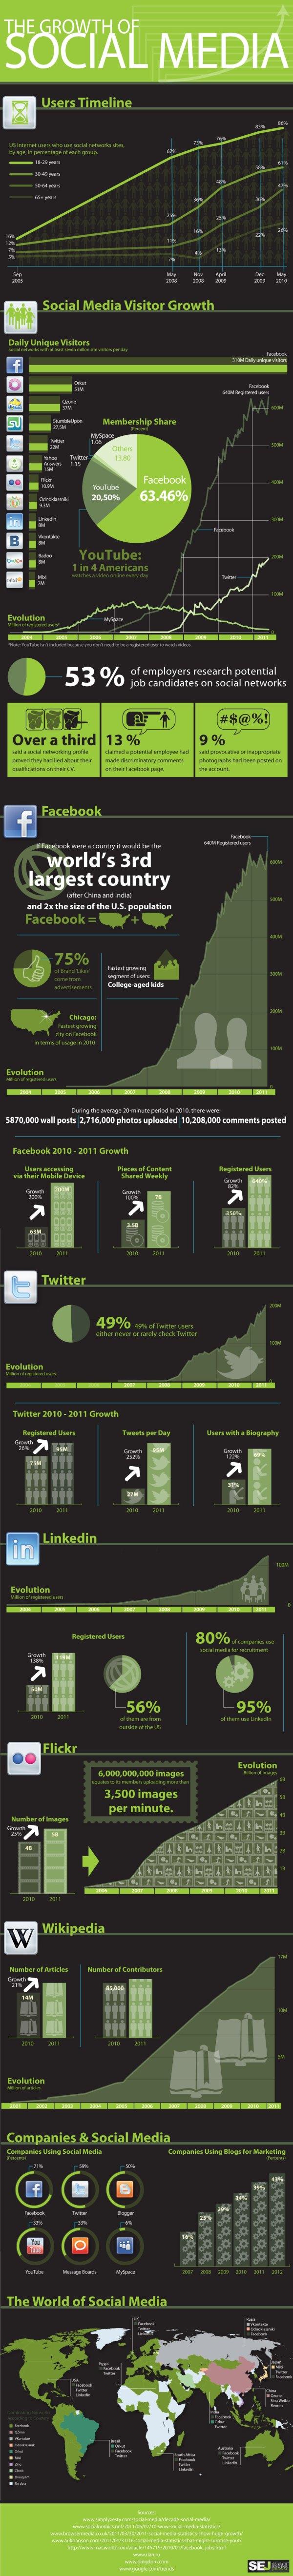 Médias sociaux : évolution et chiffres – ZE infographie